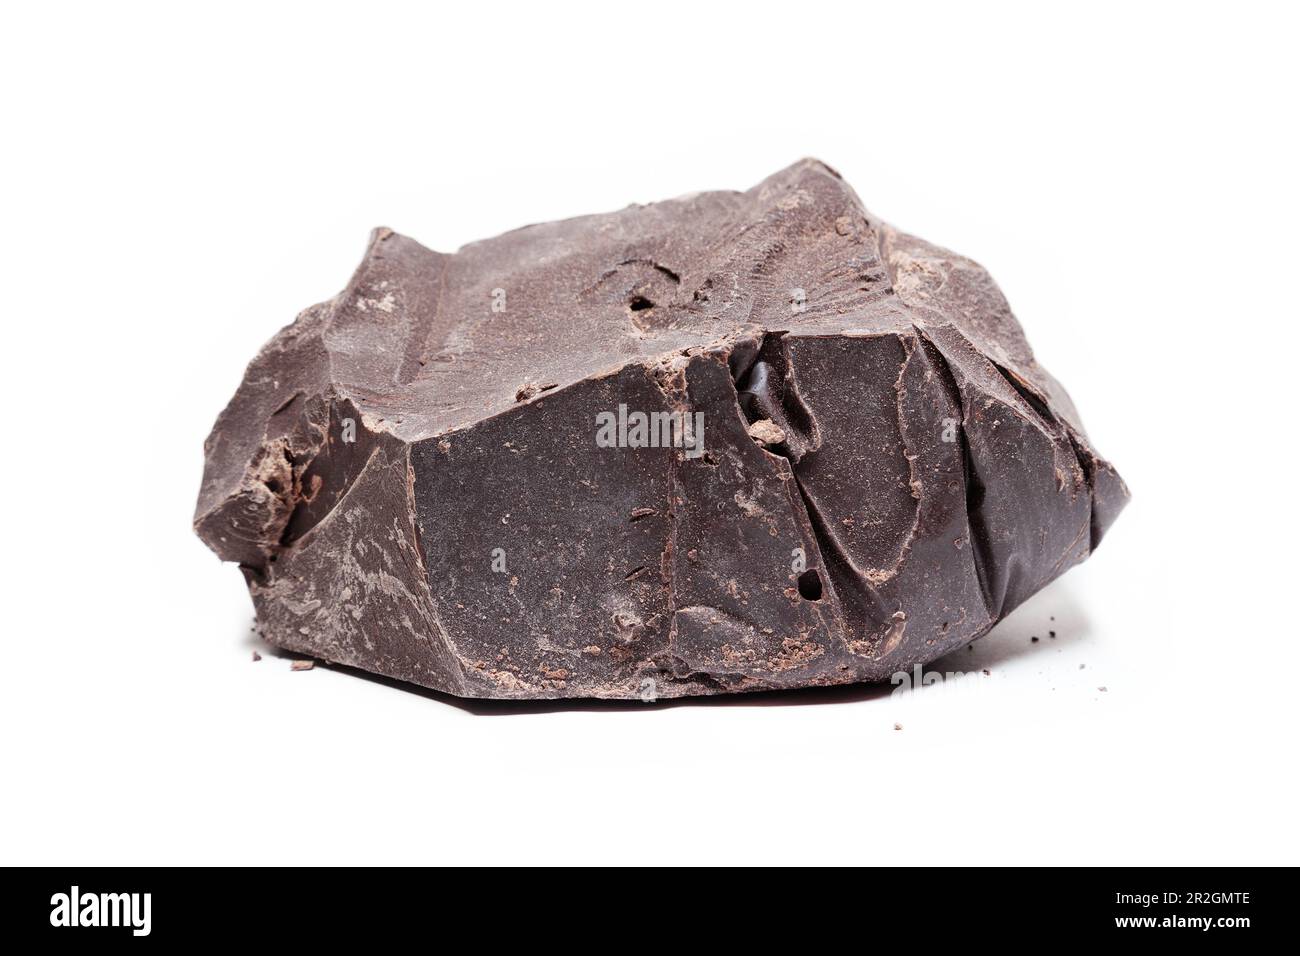 Grand morceau de chocolat noir brut isolé sur fond blanc Banque D'Images